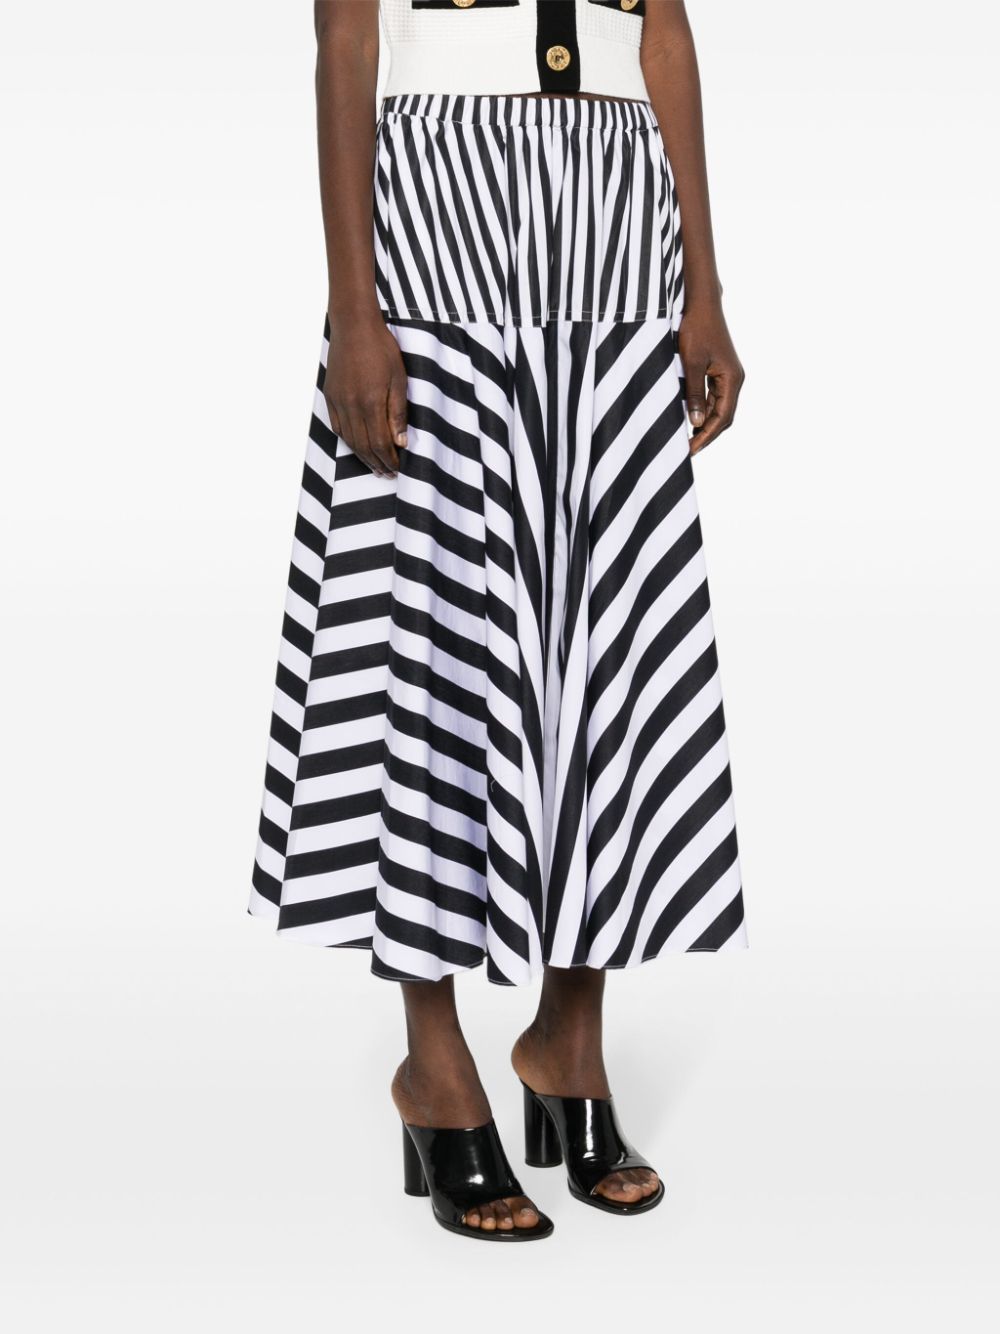 Patou PATOU- Long Skirt With Striped Print